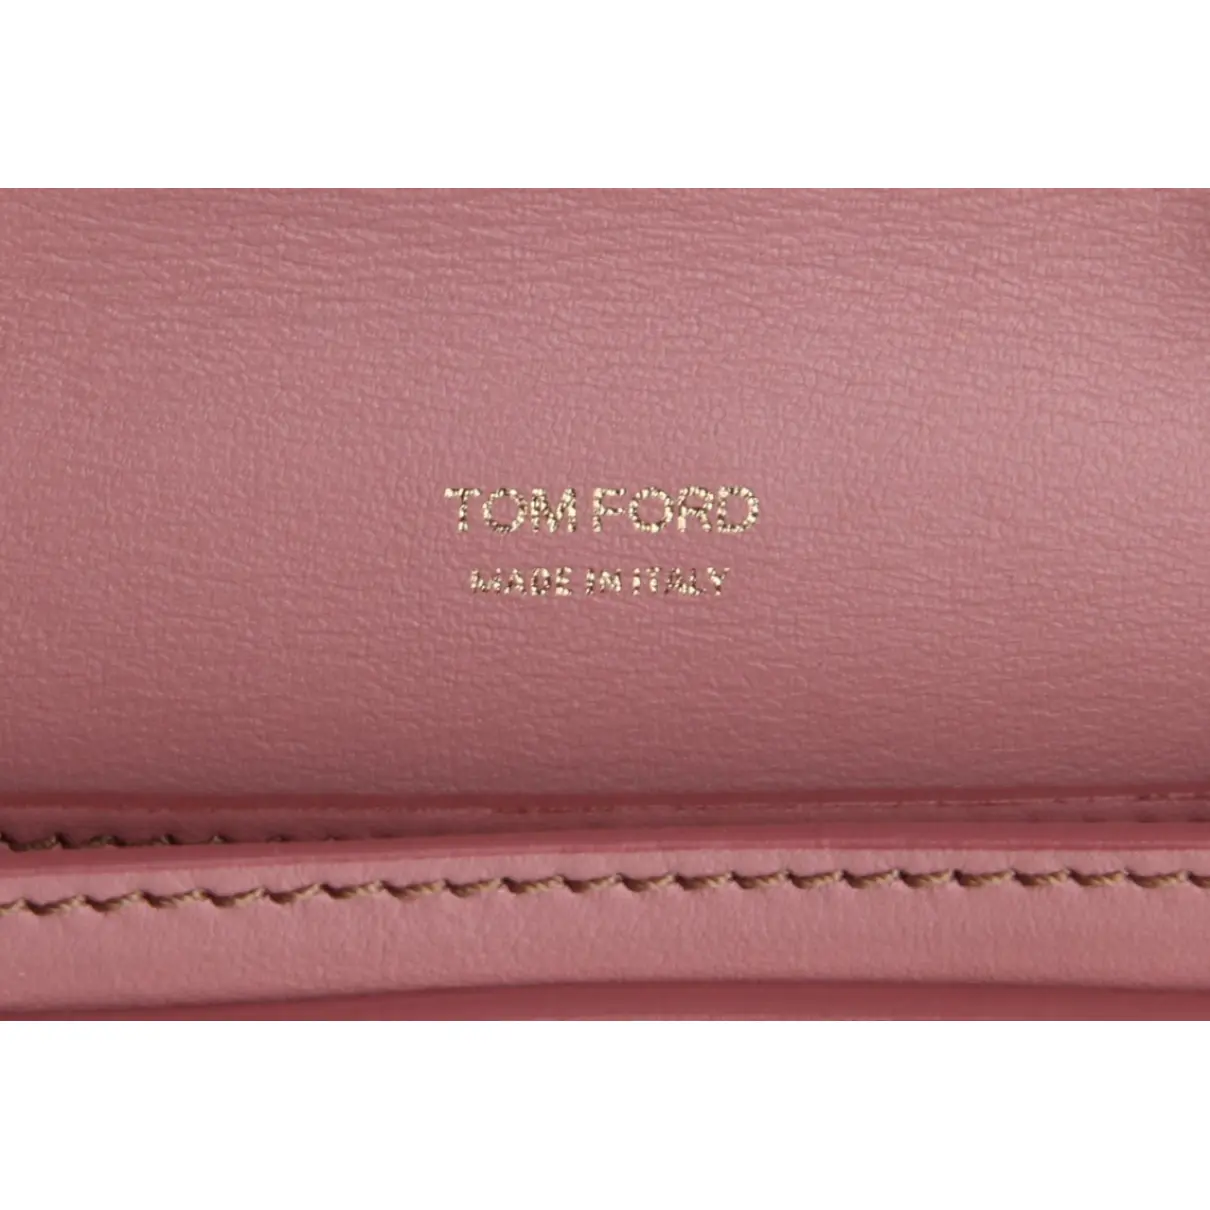 Luxury Tom Ford Handbags Women